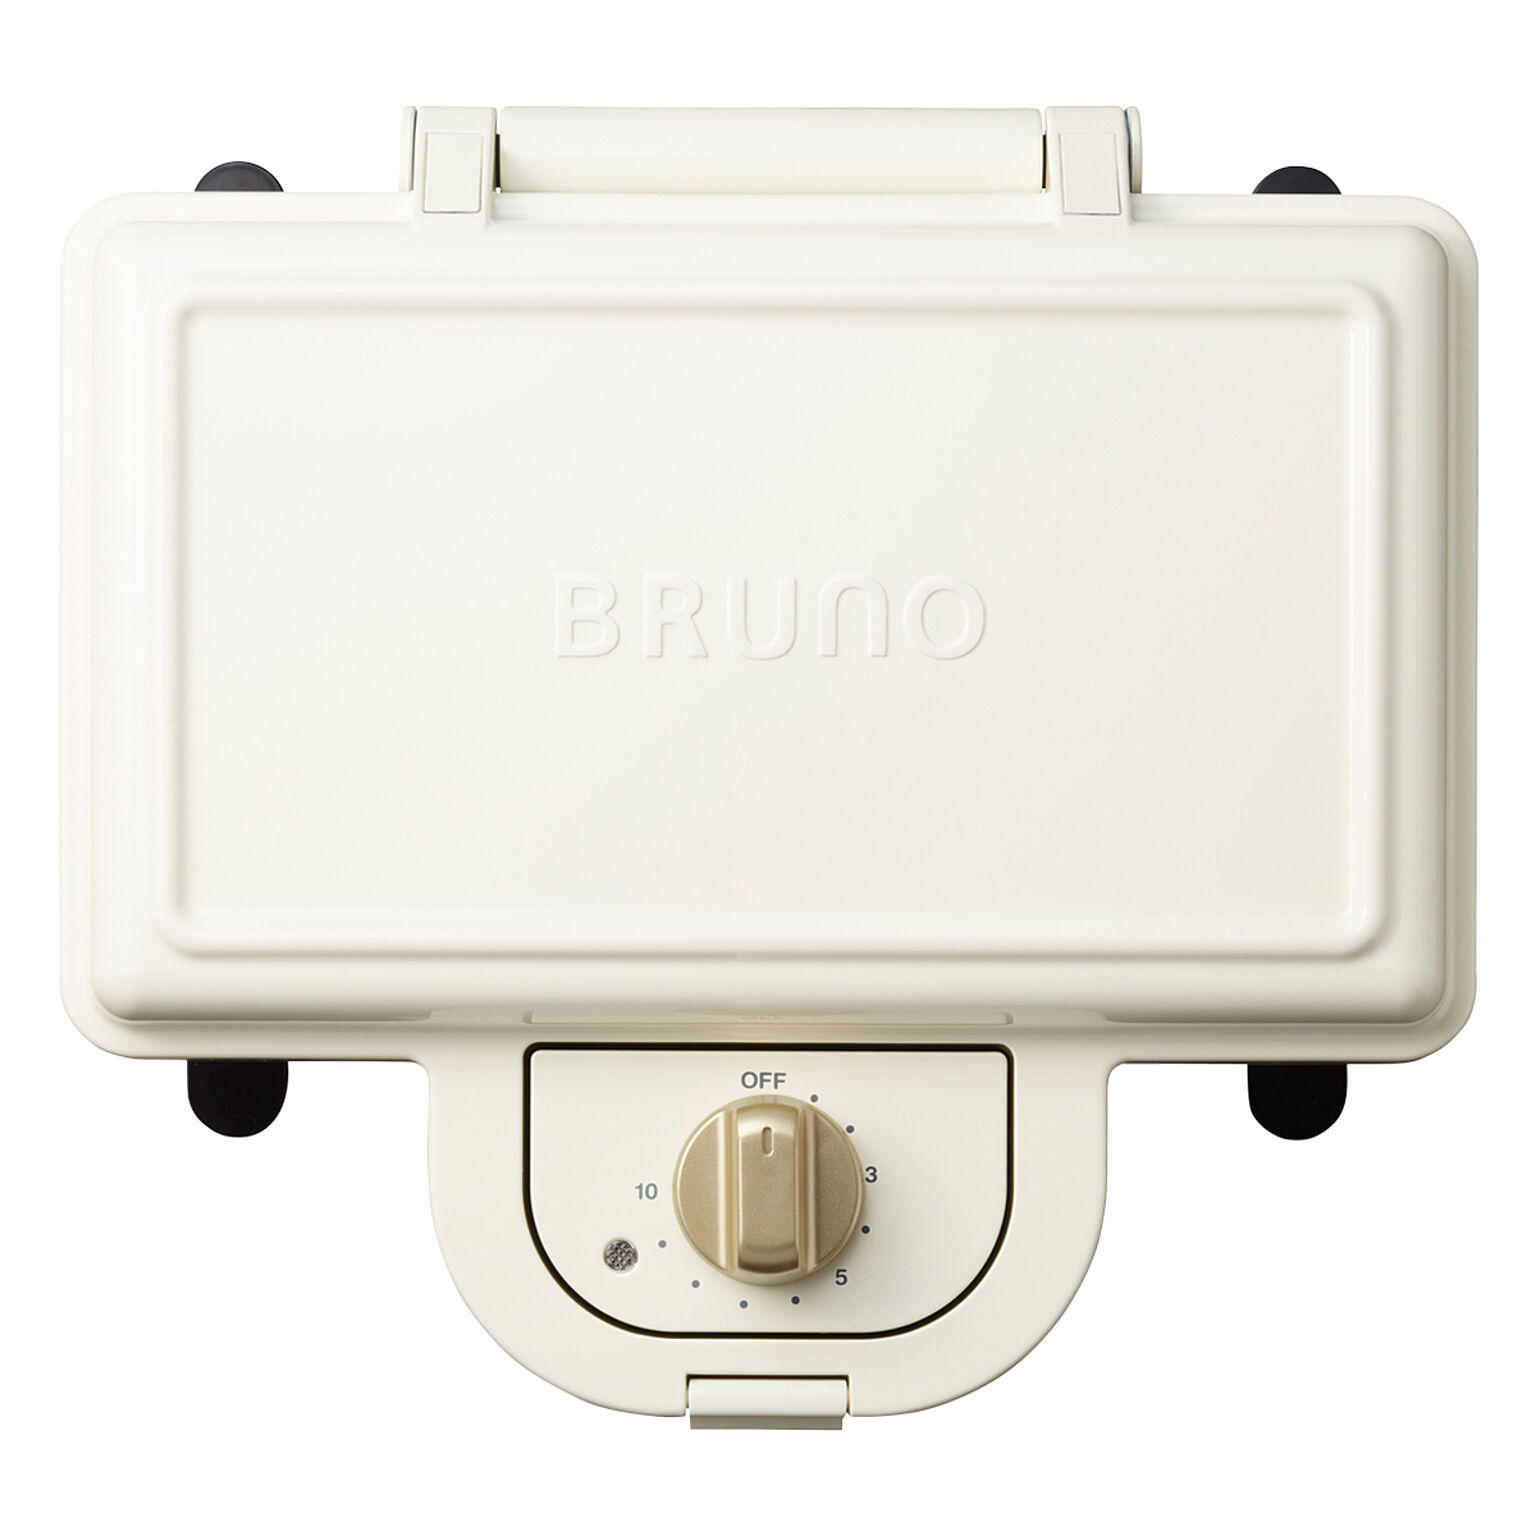 ブルーノ BRUNO ホットサンドメーカー ダブル BOE044 キッチン家電 調理器具 2枚焼き レシピ付き 食パン サンドイッチ